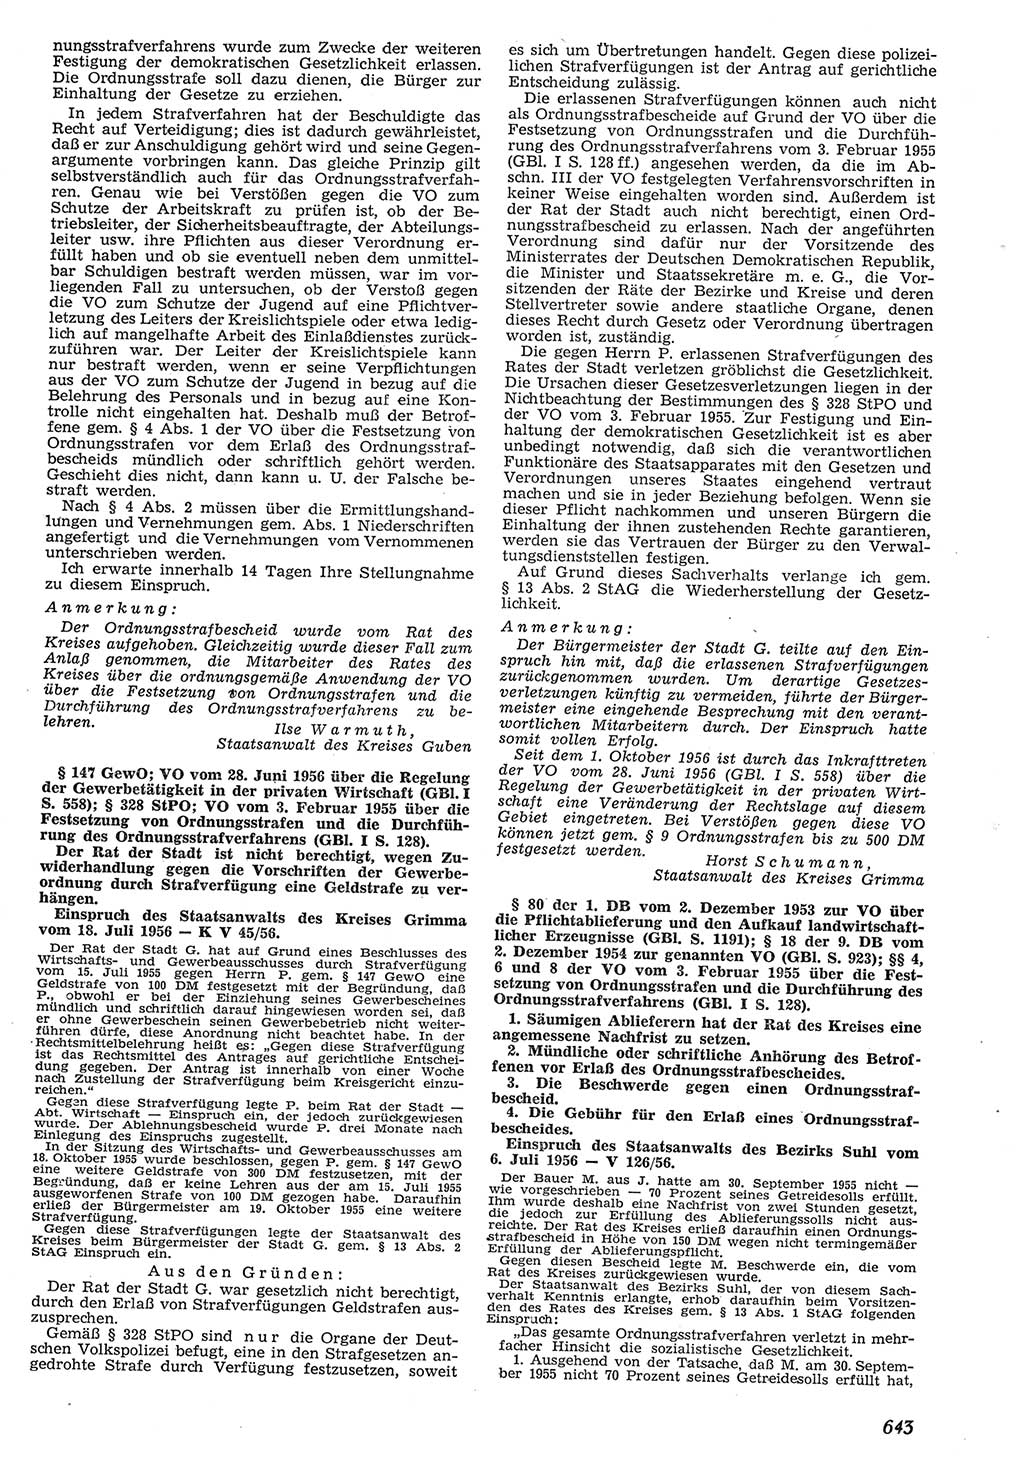 Neue Justiz (NJ), Zeitschrift für Recht und Rechtswissenschaft [Deutsche Demokratische Republik (DDR)], 10. Jahrgang 1956, Seite 643 (NJ DDR 1956, S. 643)